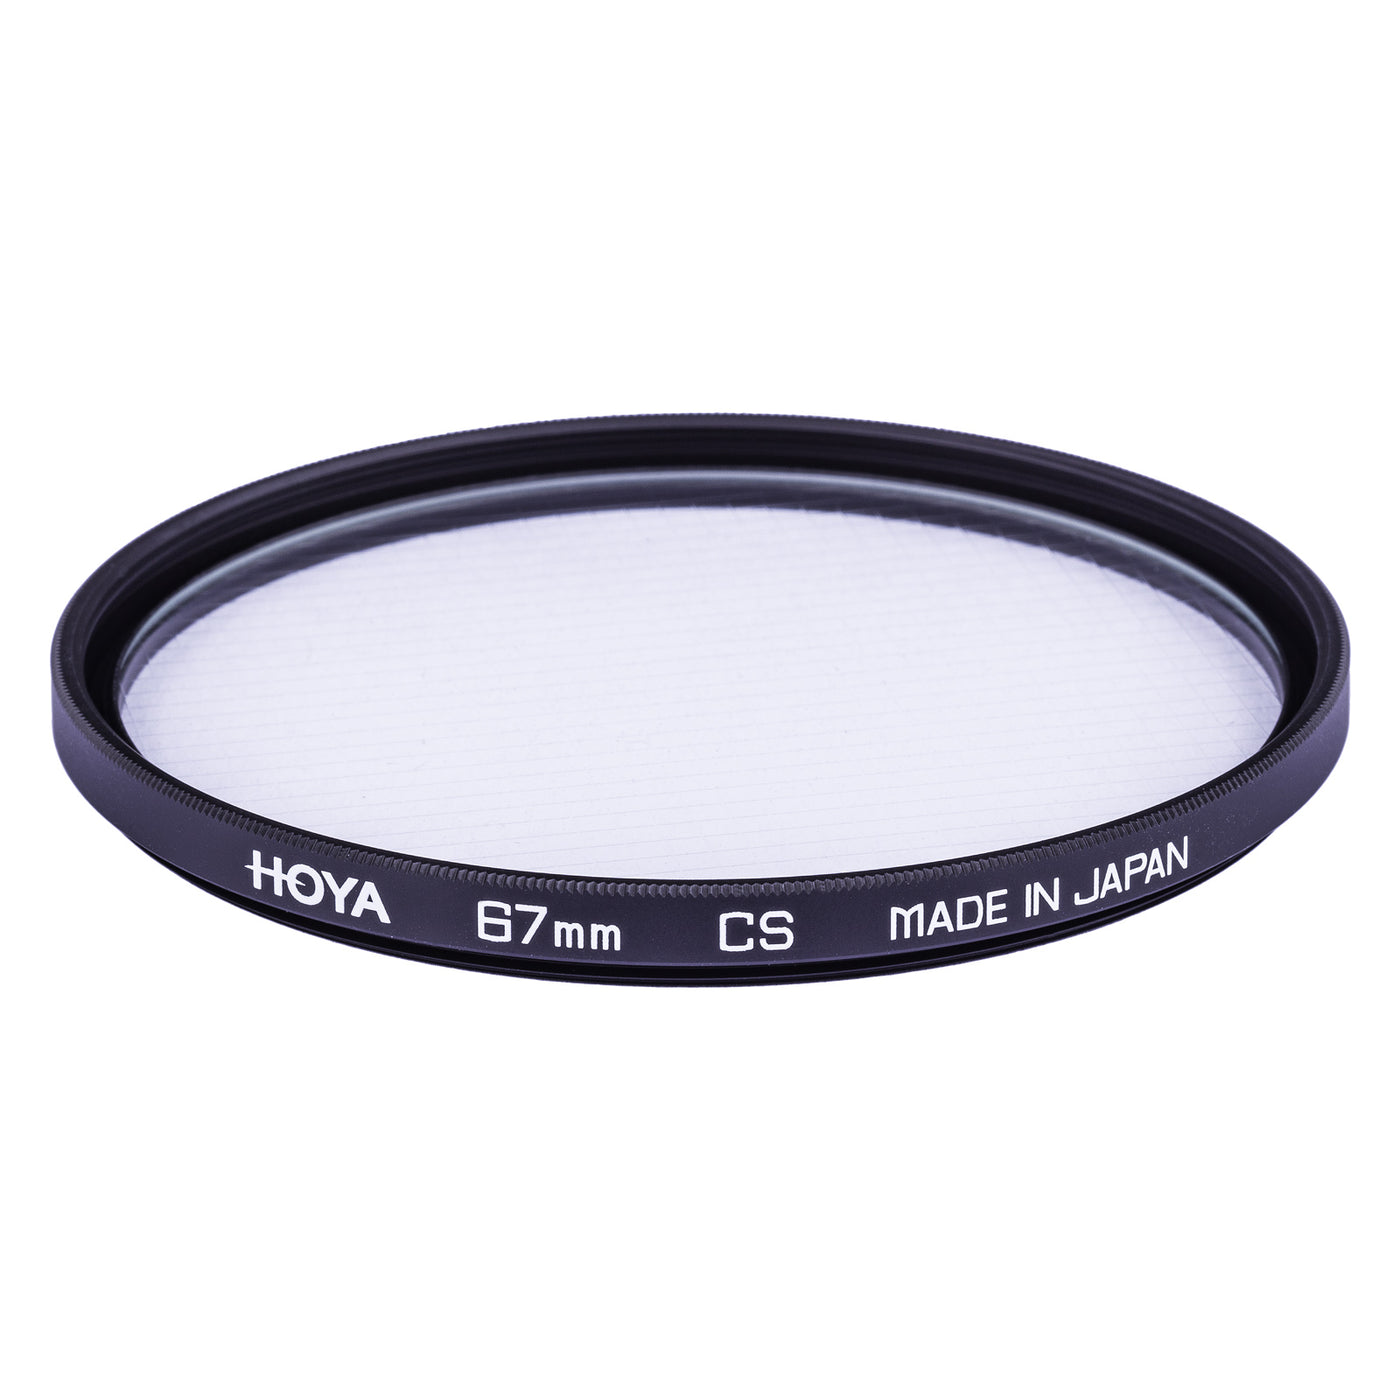 Hoya CS Filter